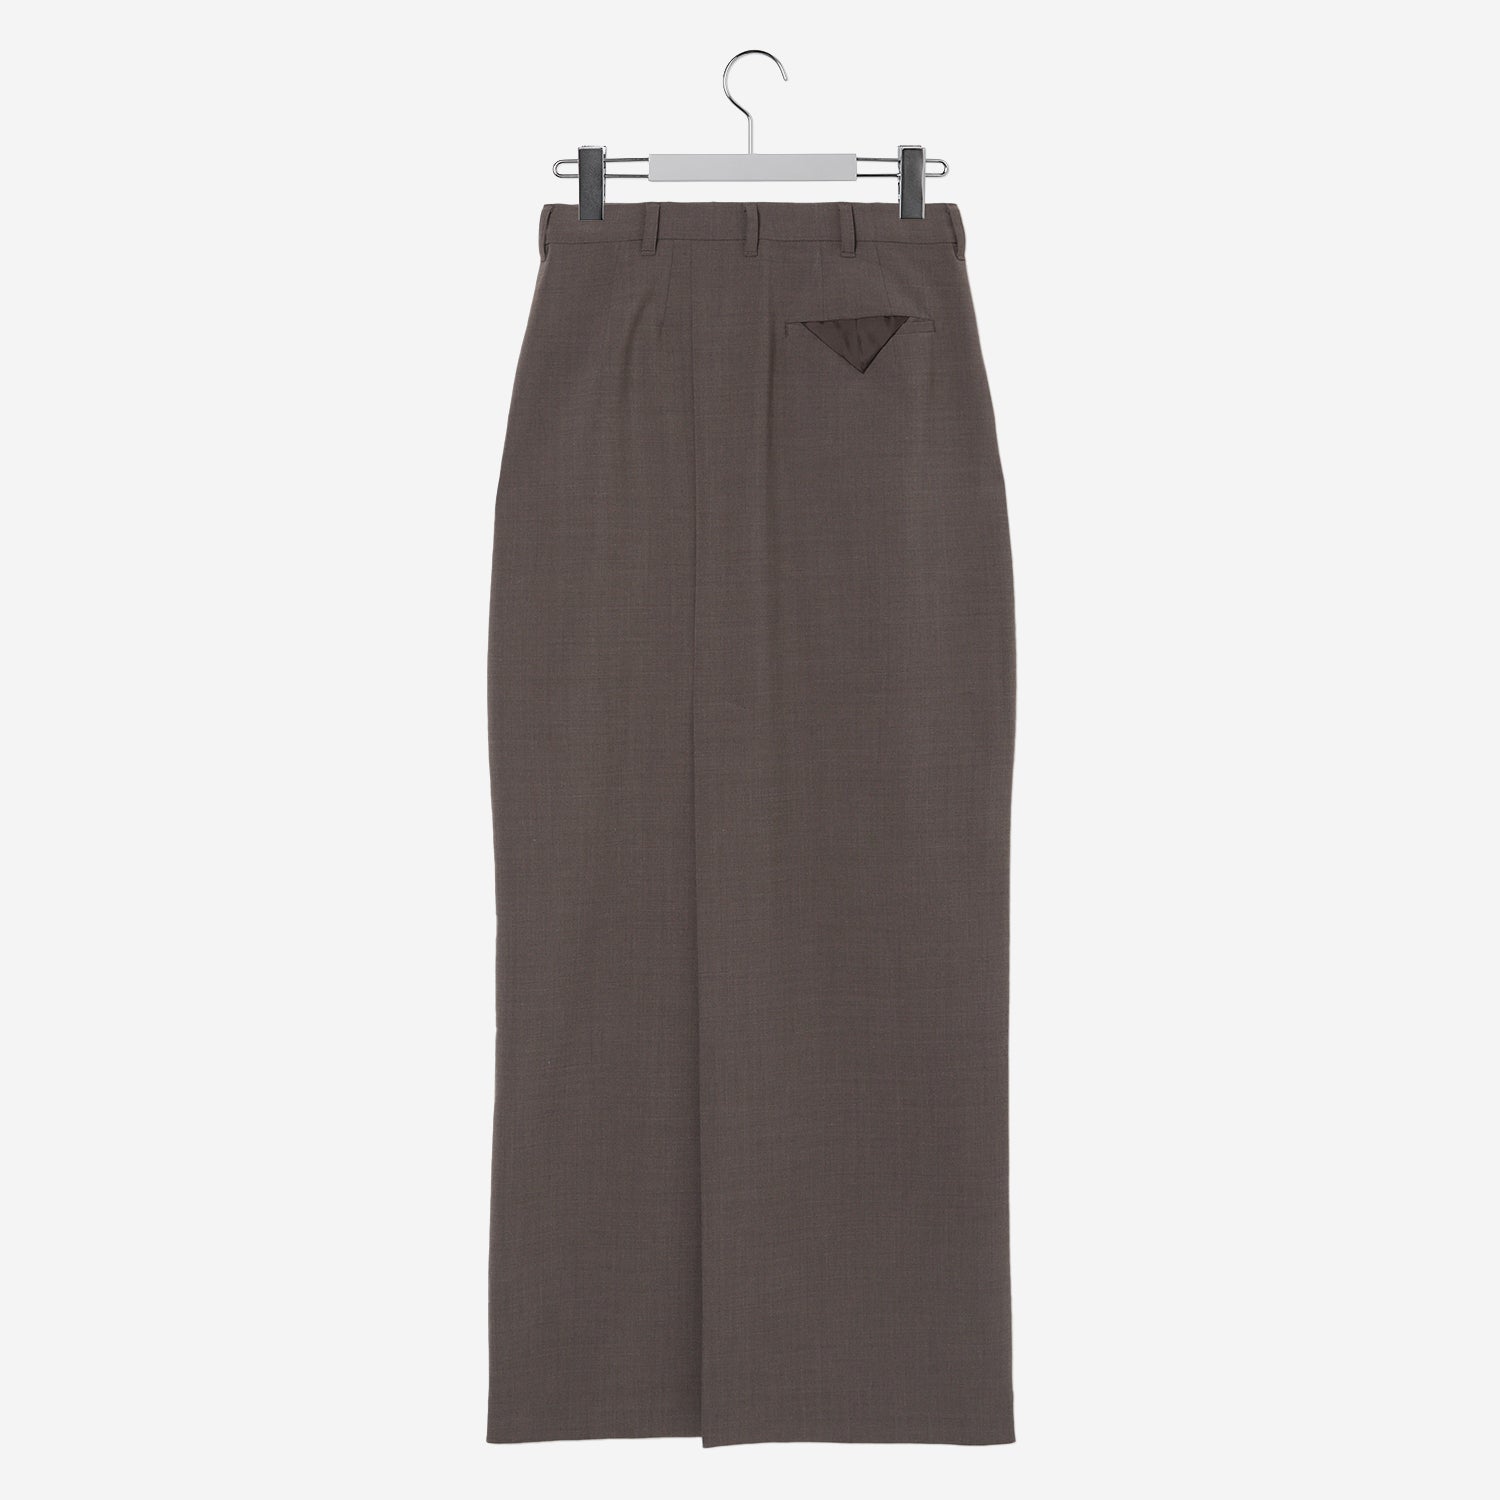 Back Open Skirt / brown